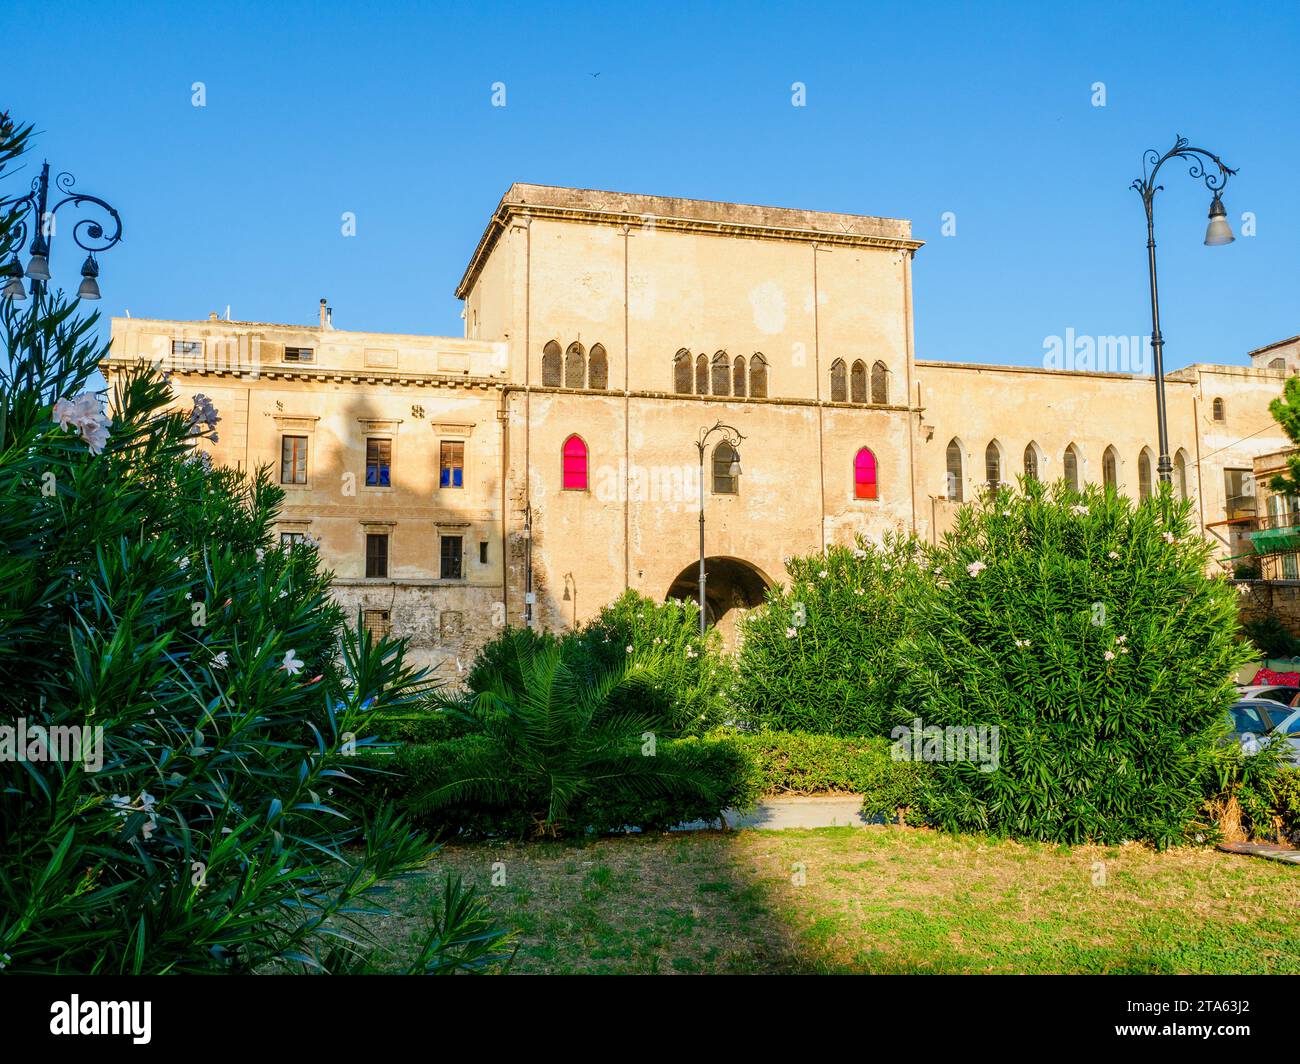 Porta dei Greci (Gate of the Greeks) - Palermo, Sicily, Italy Stock Photo